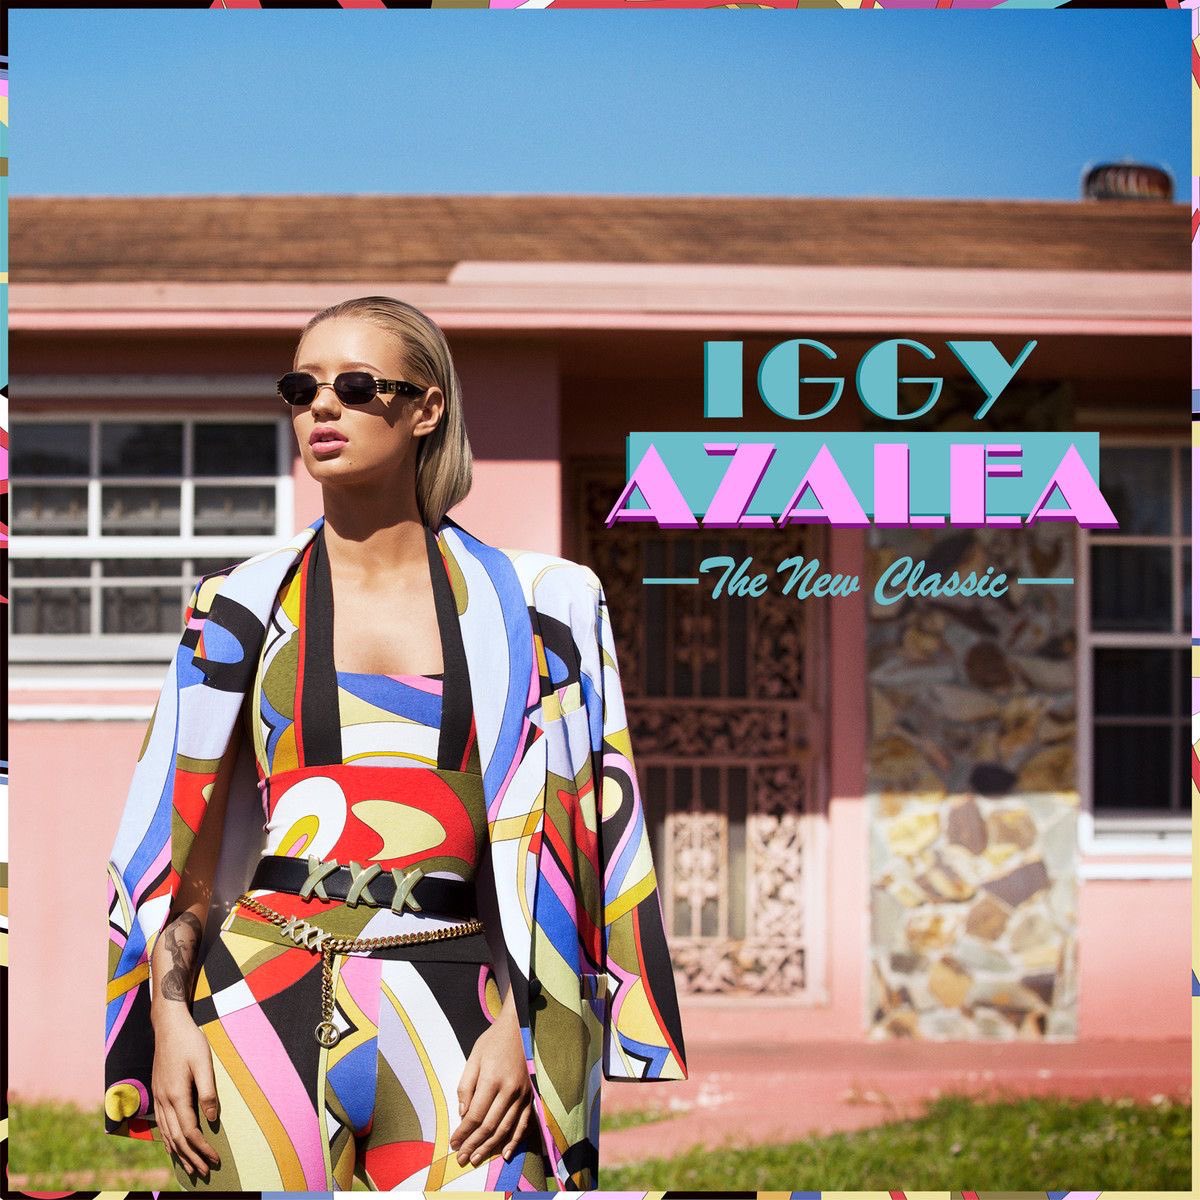 Mariah Carey em 2004 lançando o álbum da sua carreira e a Iggy Azalea em 2014 lançando o seu